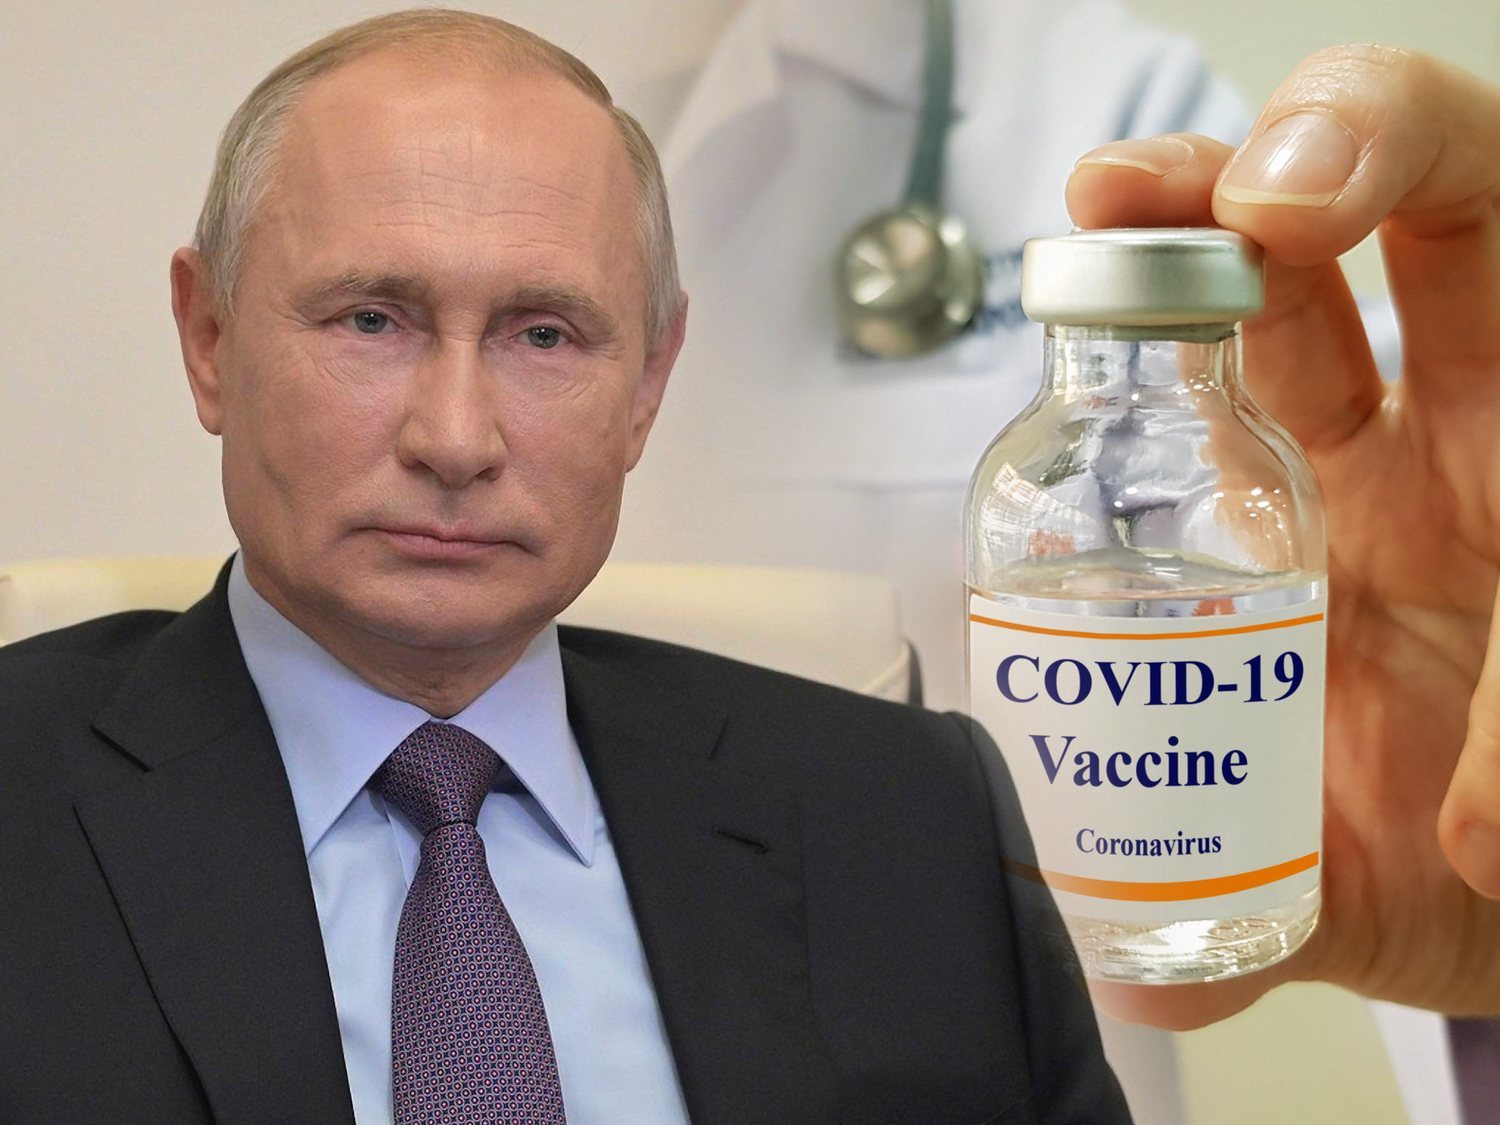 La vacuna rusa es segura y genera anticuerpos frente al coronavirus